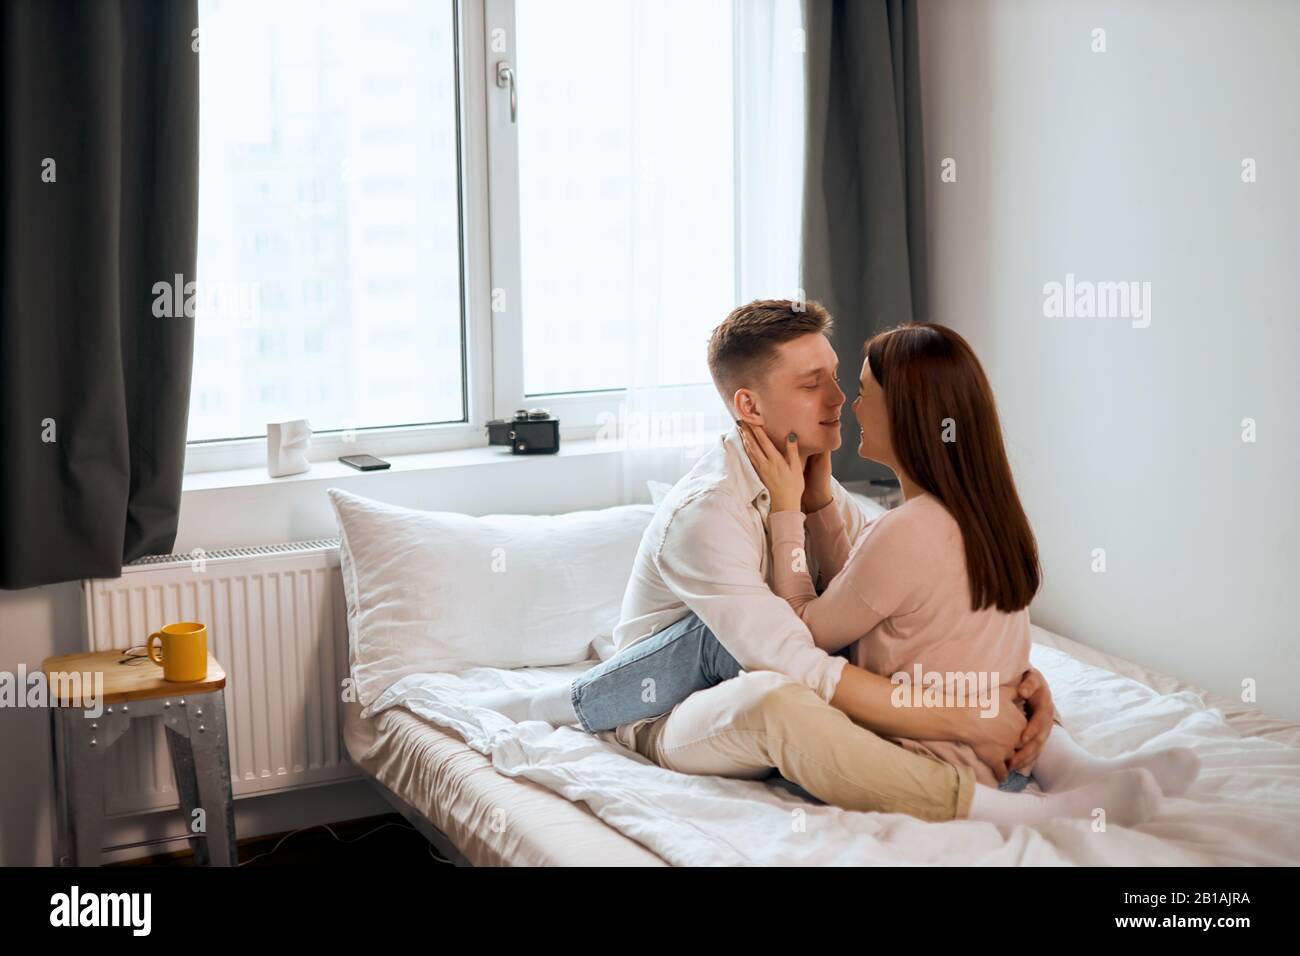 Charmant homme romantique et femme qui va baiser, regarder l'un l'autre  comme s'asseoir sur le lit, vue latérale pleine photo. Tendresse, amour  Photo Stock - Alamy